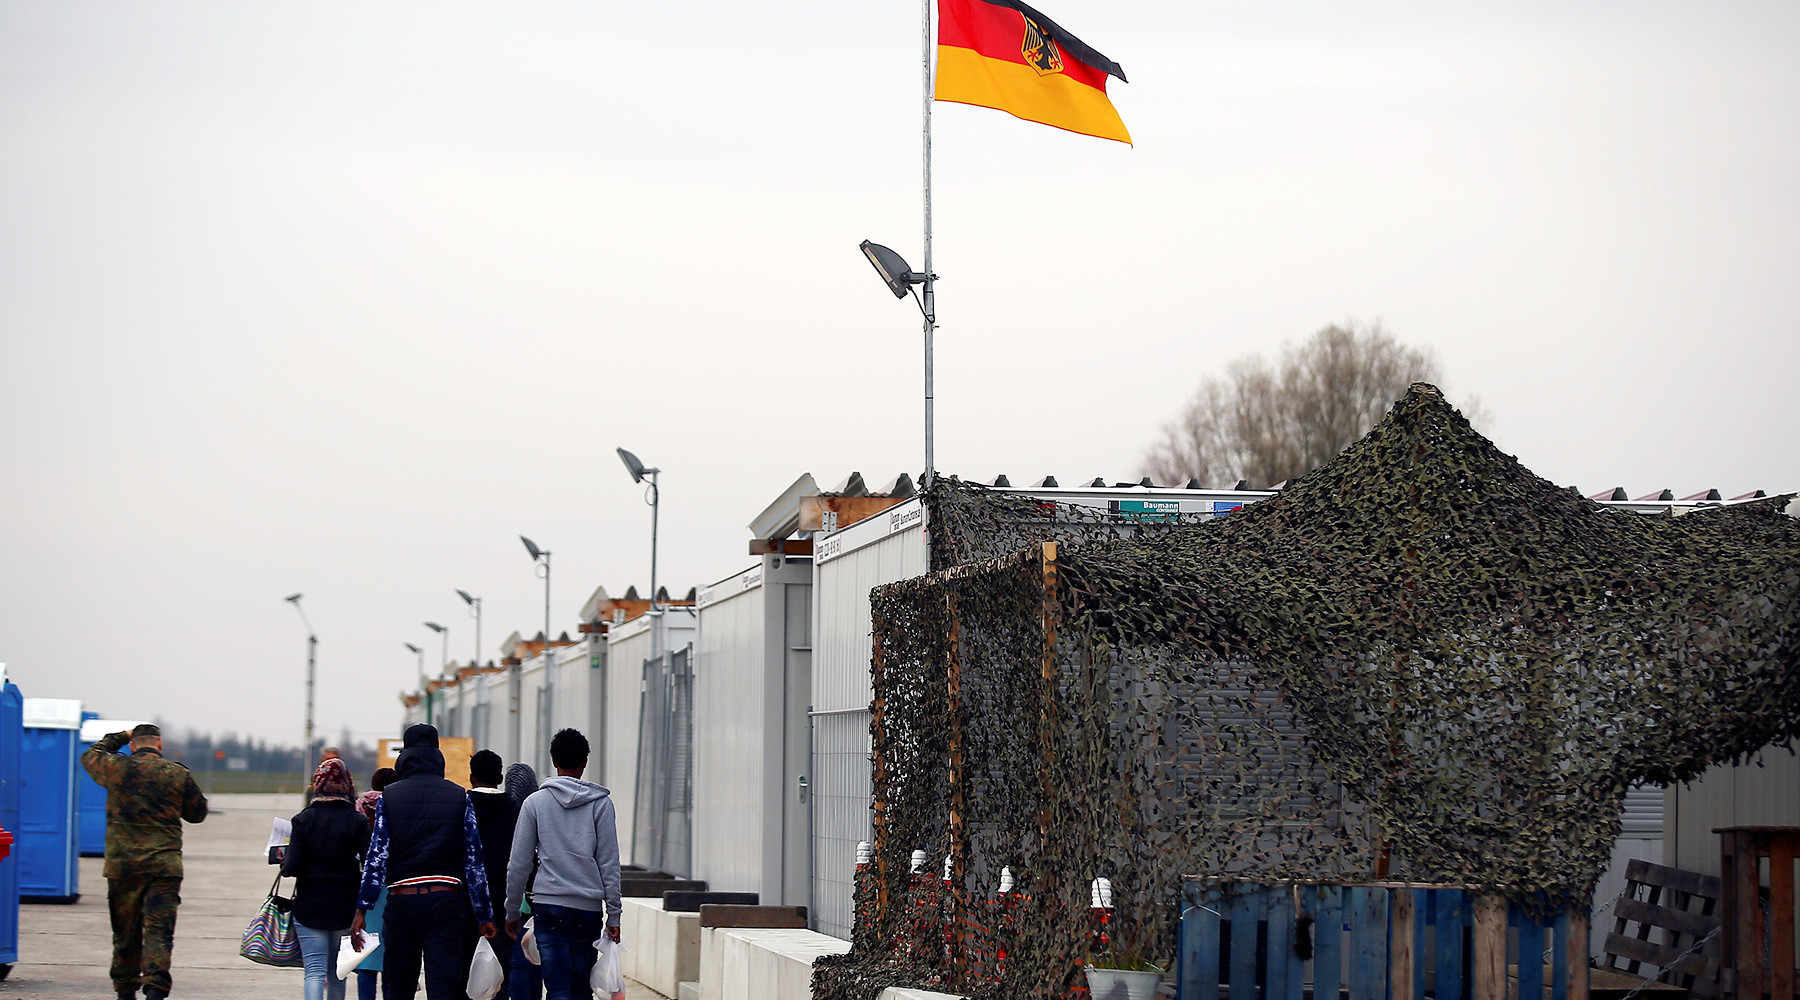 «Наш гражданский долг»: почему убийство мигрантами жителя Германии вызвало массовые протесты (ФОТО)